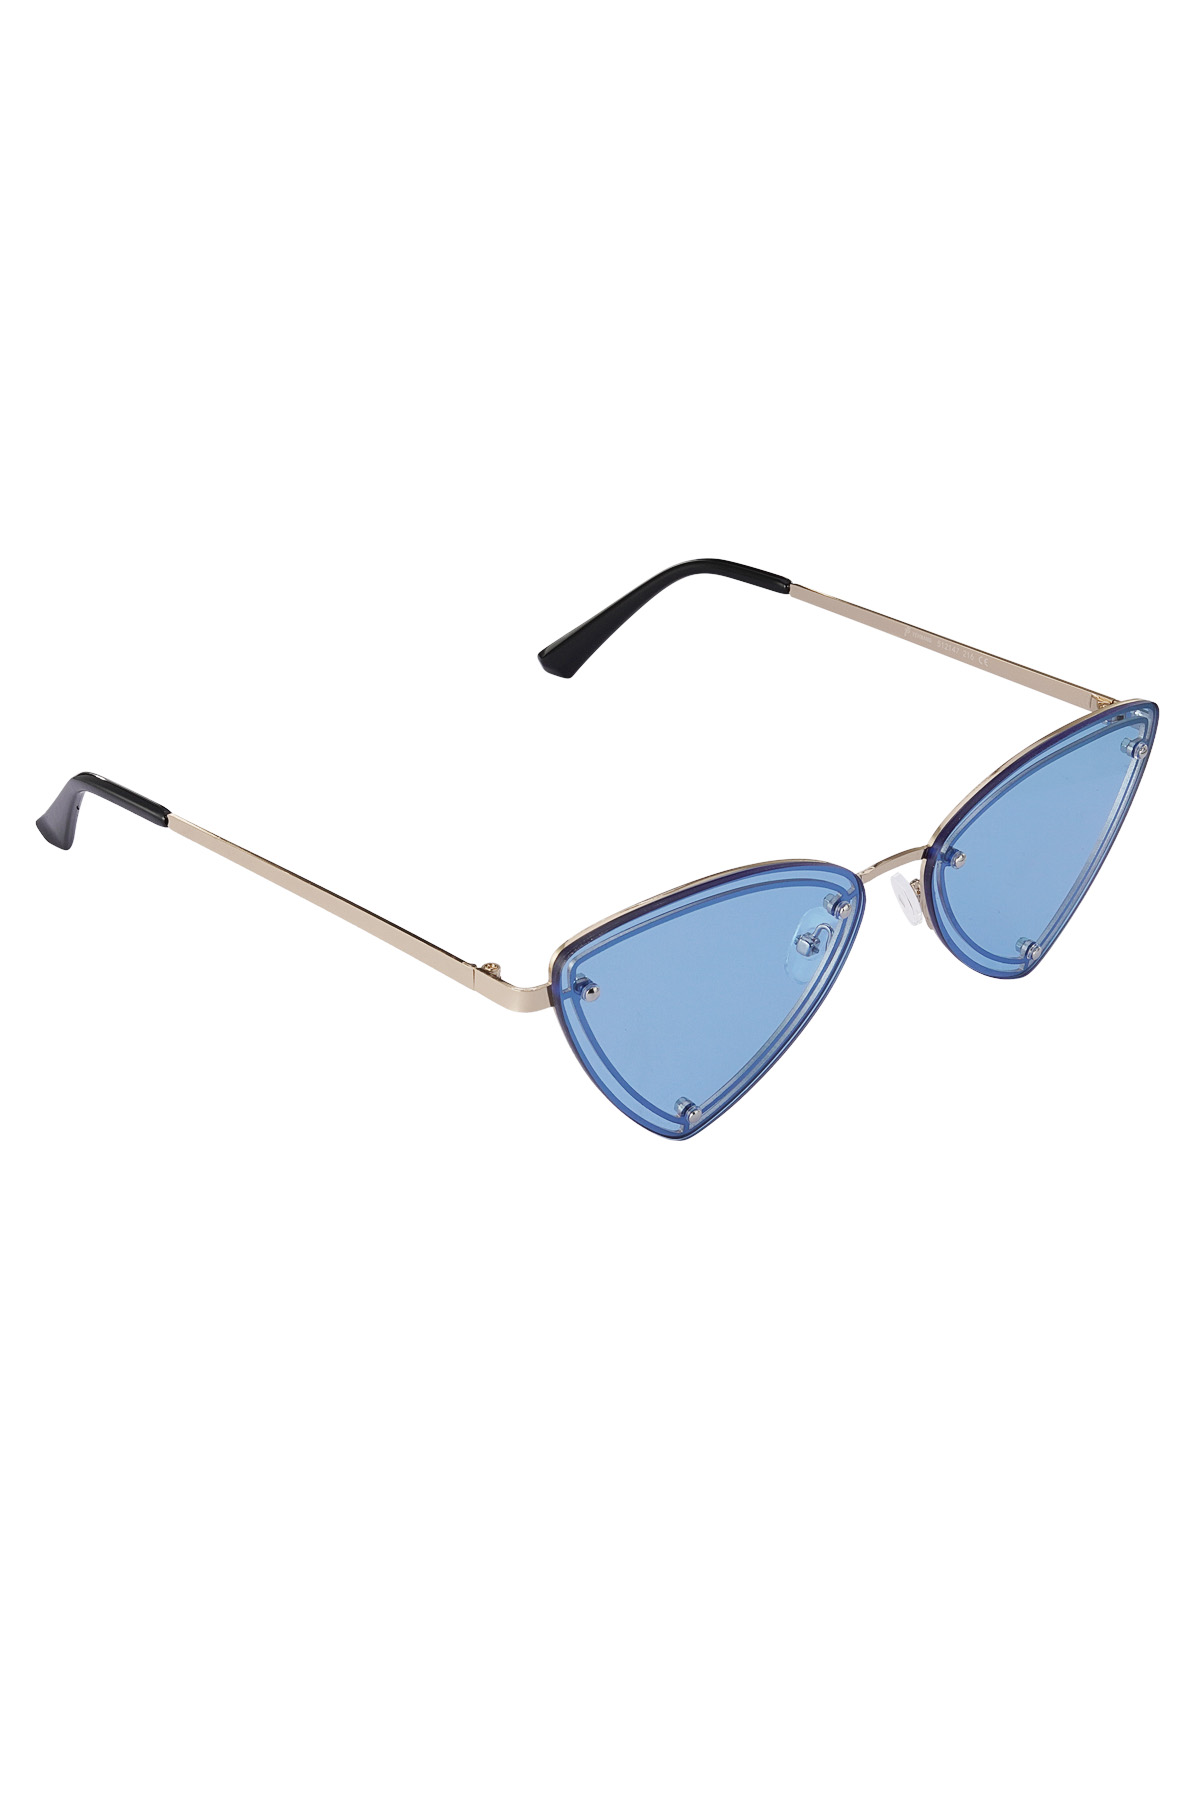 Retro parti güneş gözlüğü - mavi altın h5 